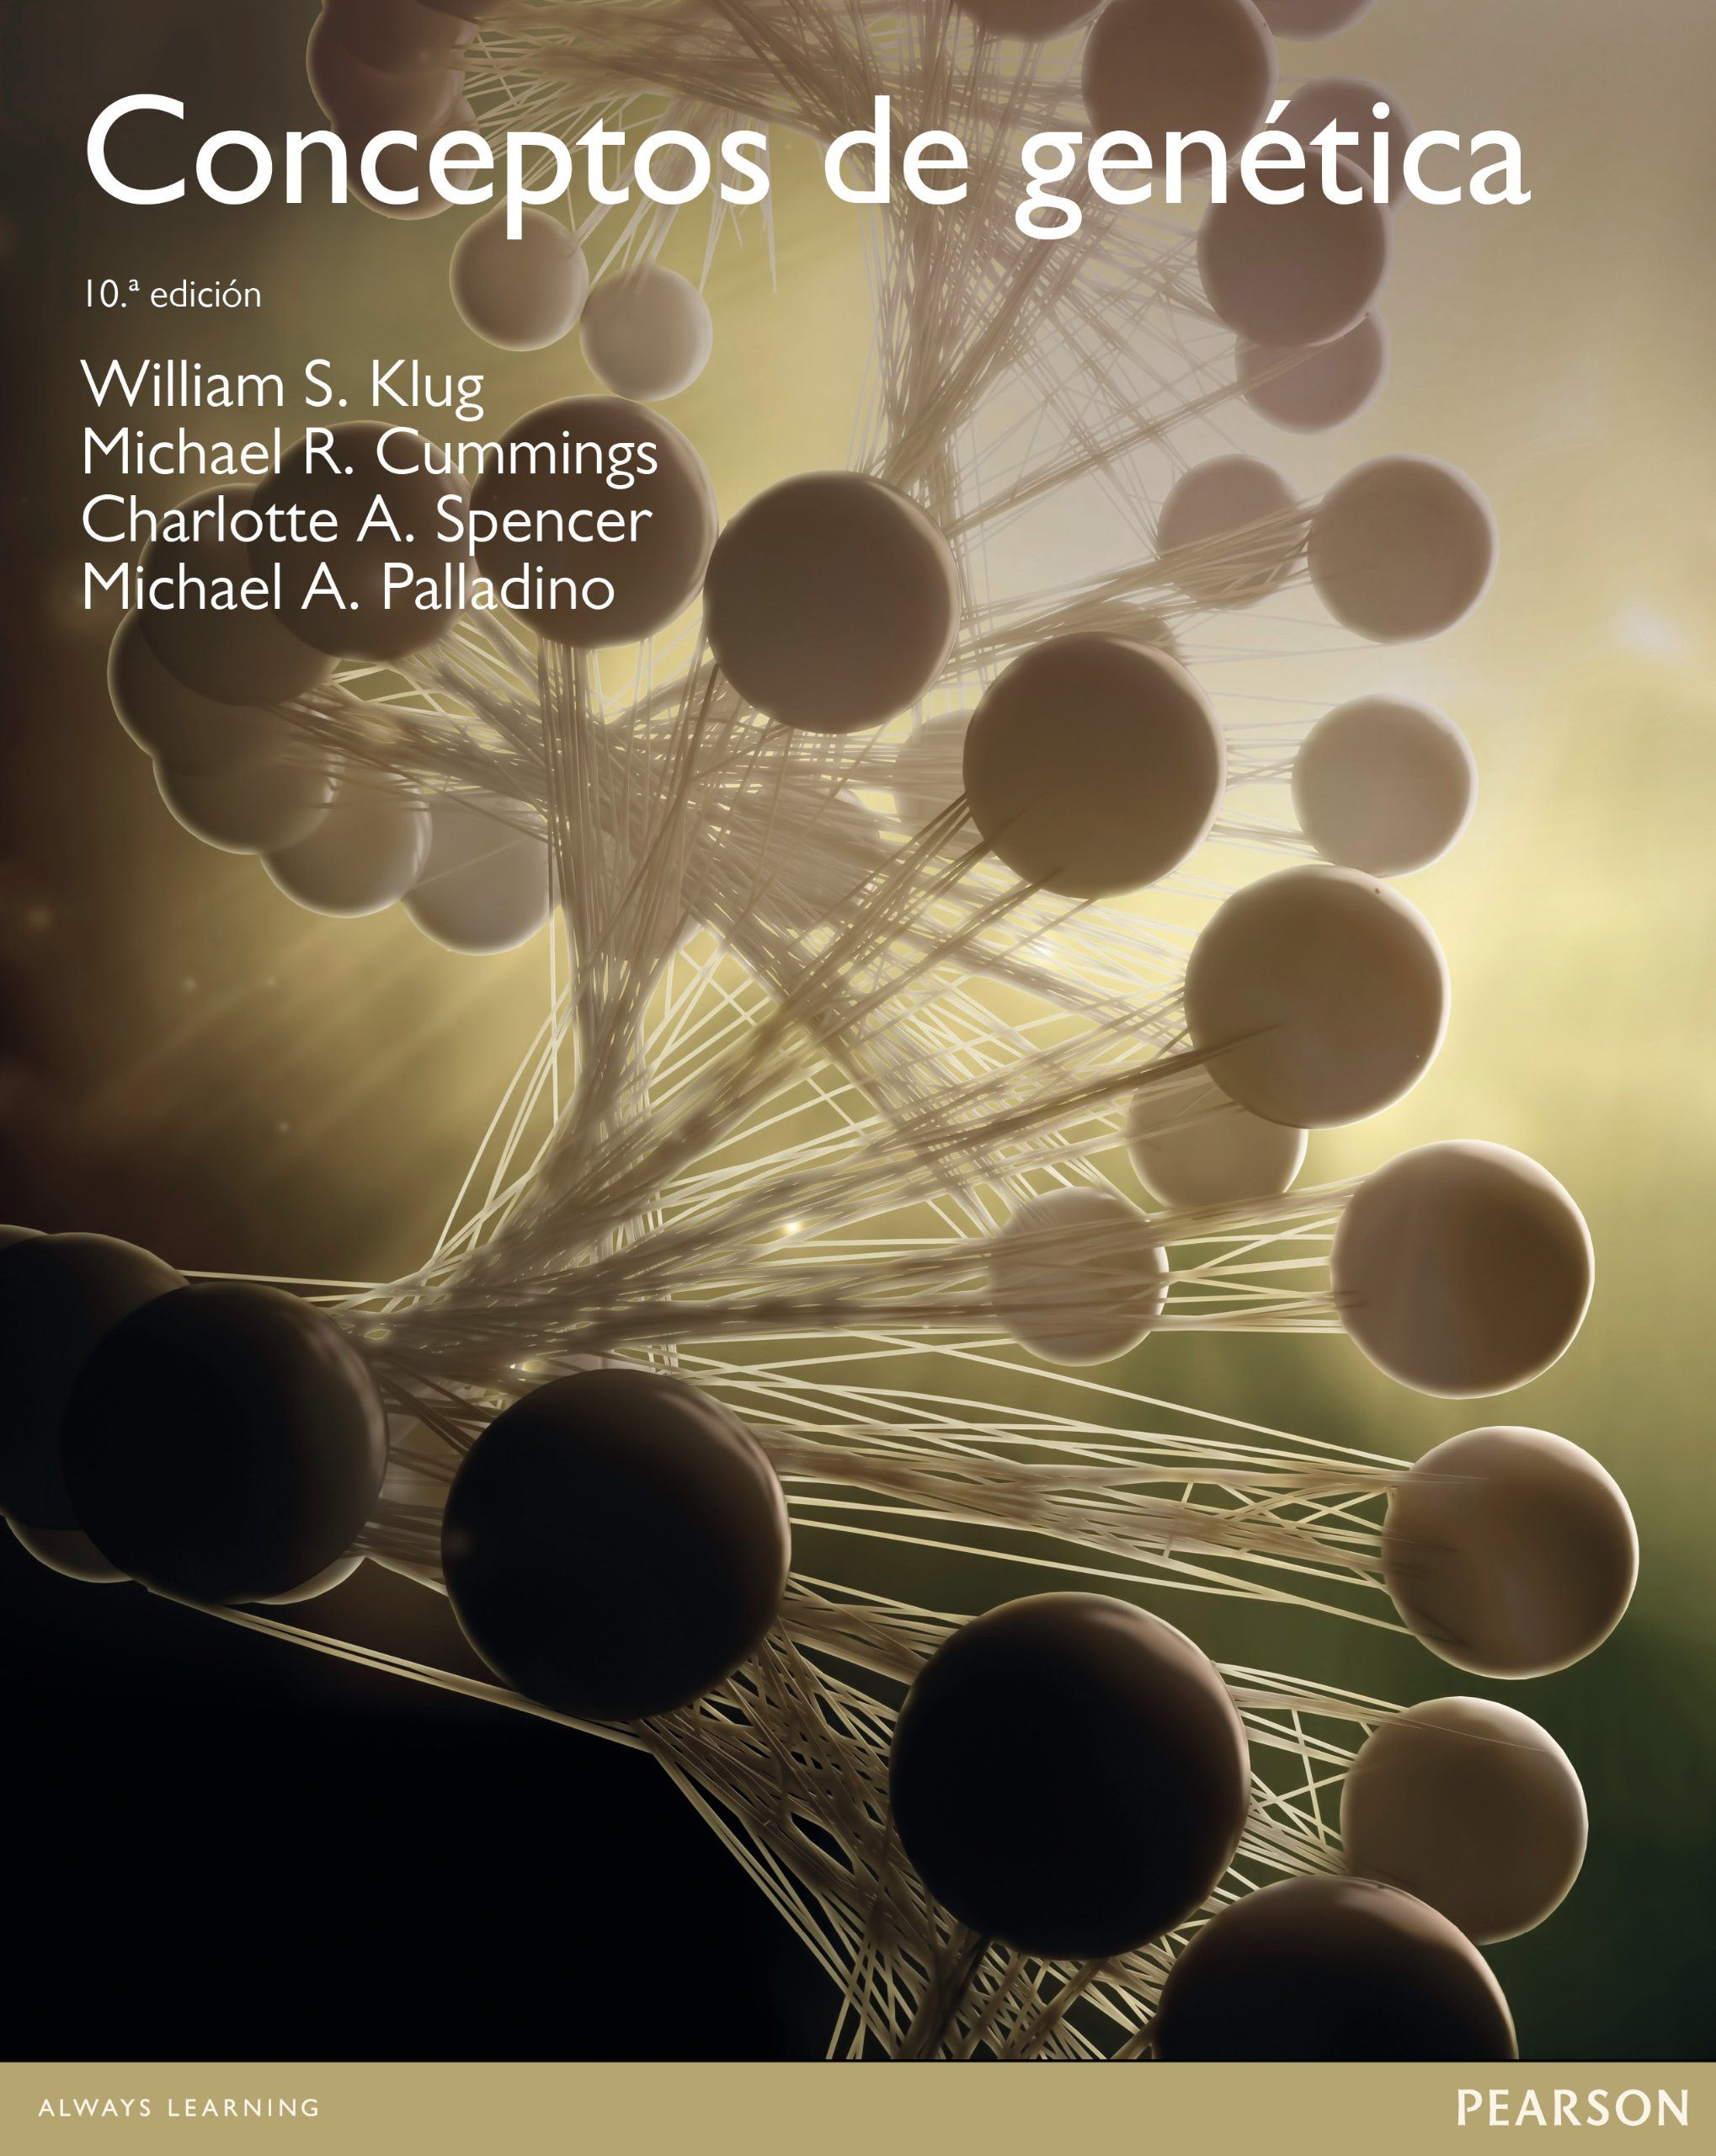 Conceptos de genetica william klug pdf pdf